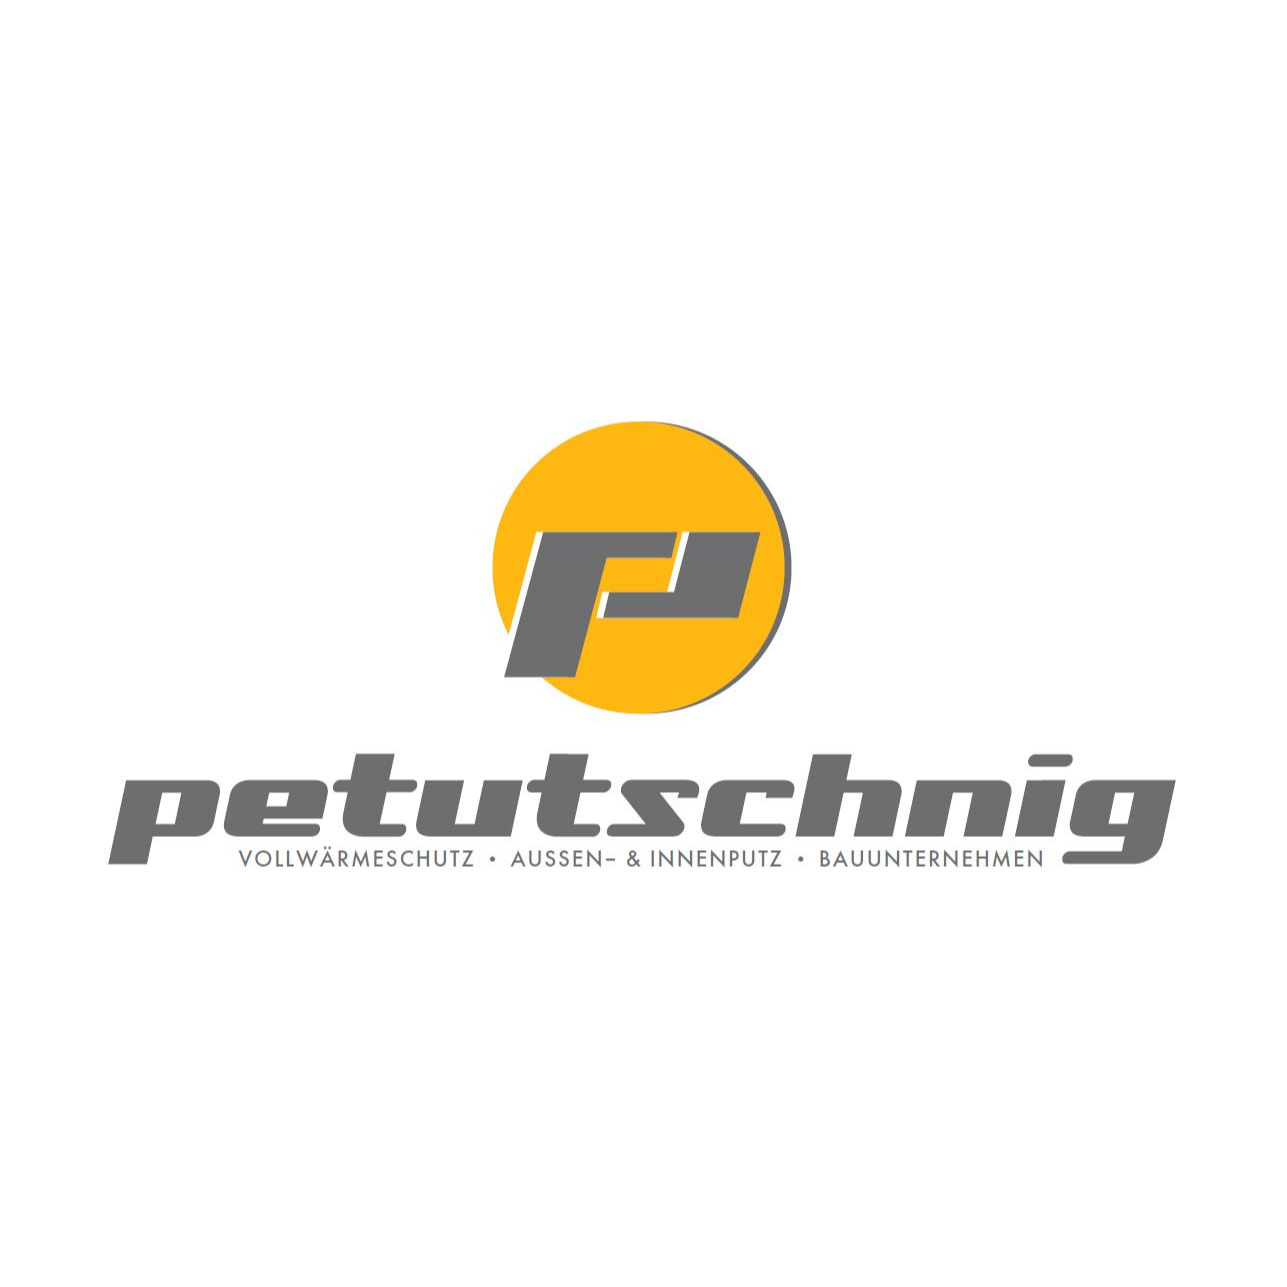 Ing. A. Petutschnig GmbH